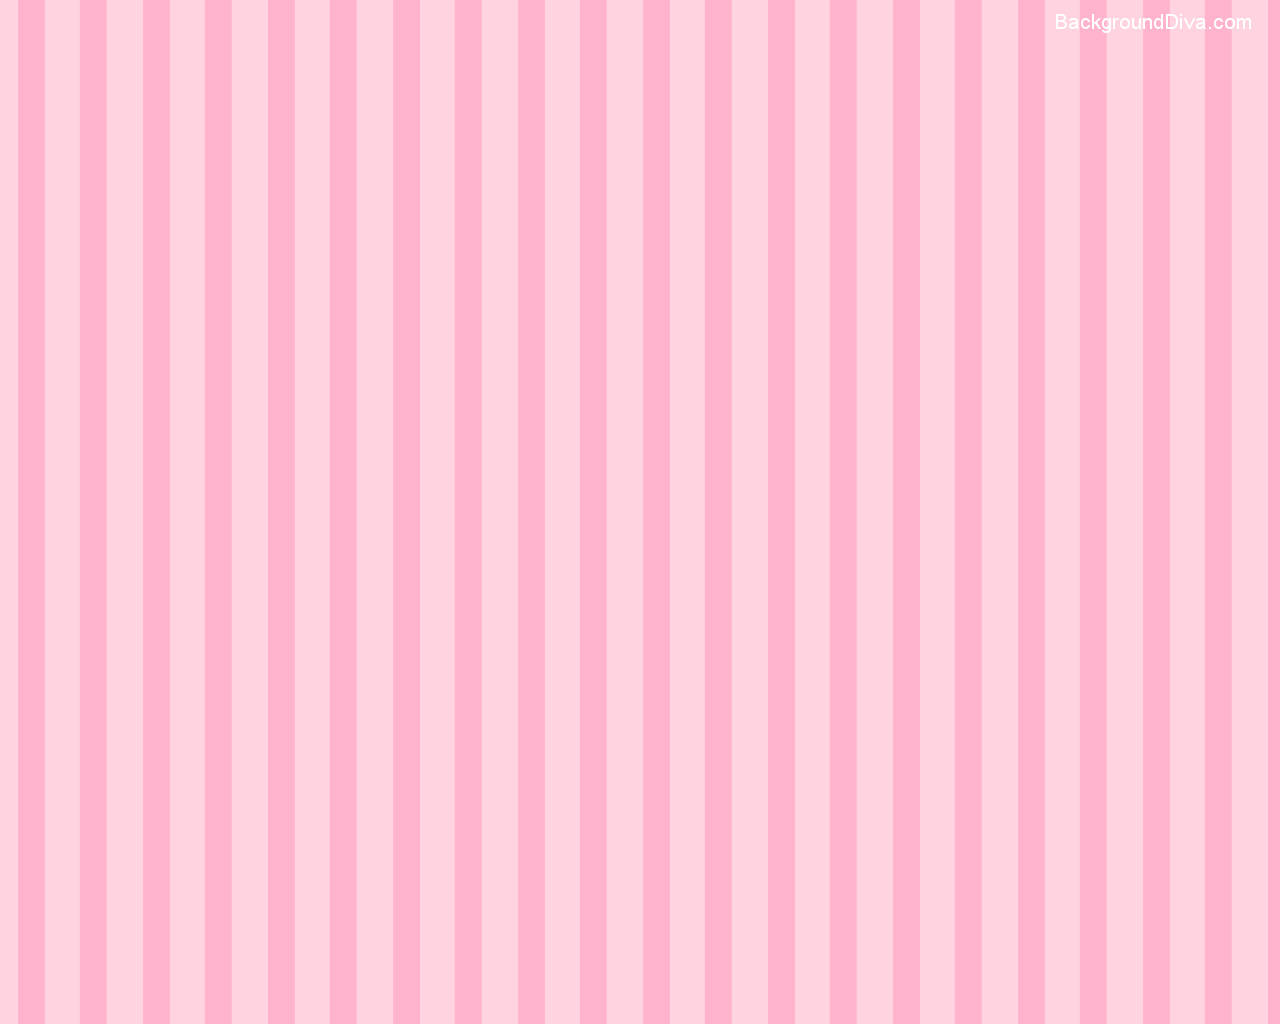 Light Pink 1280X1024 wallpaper